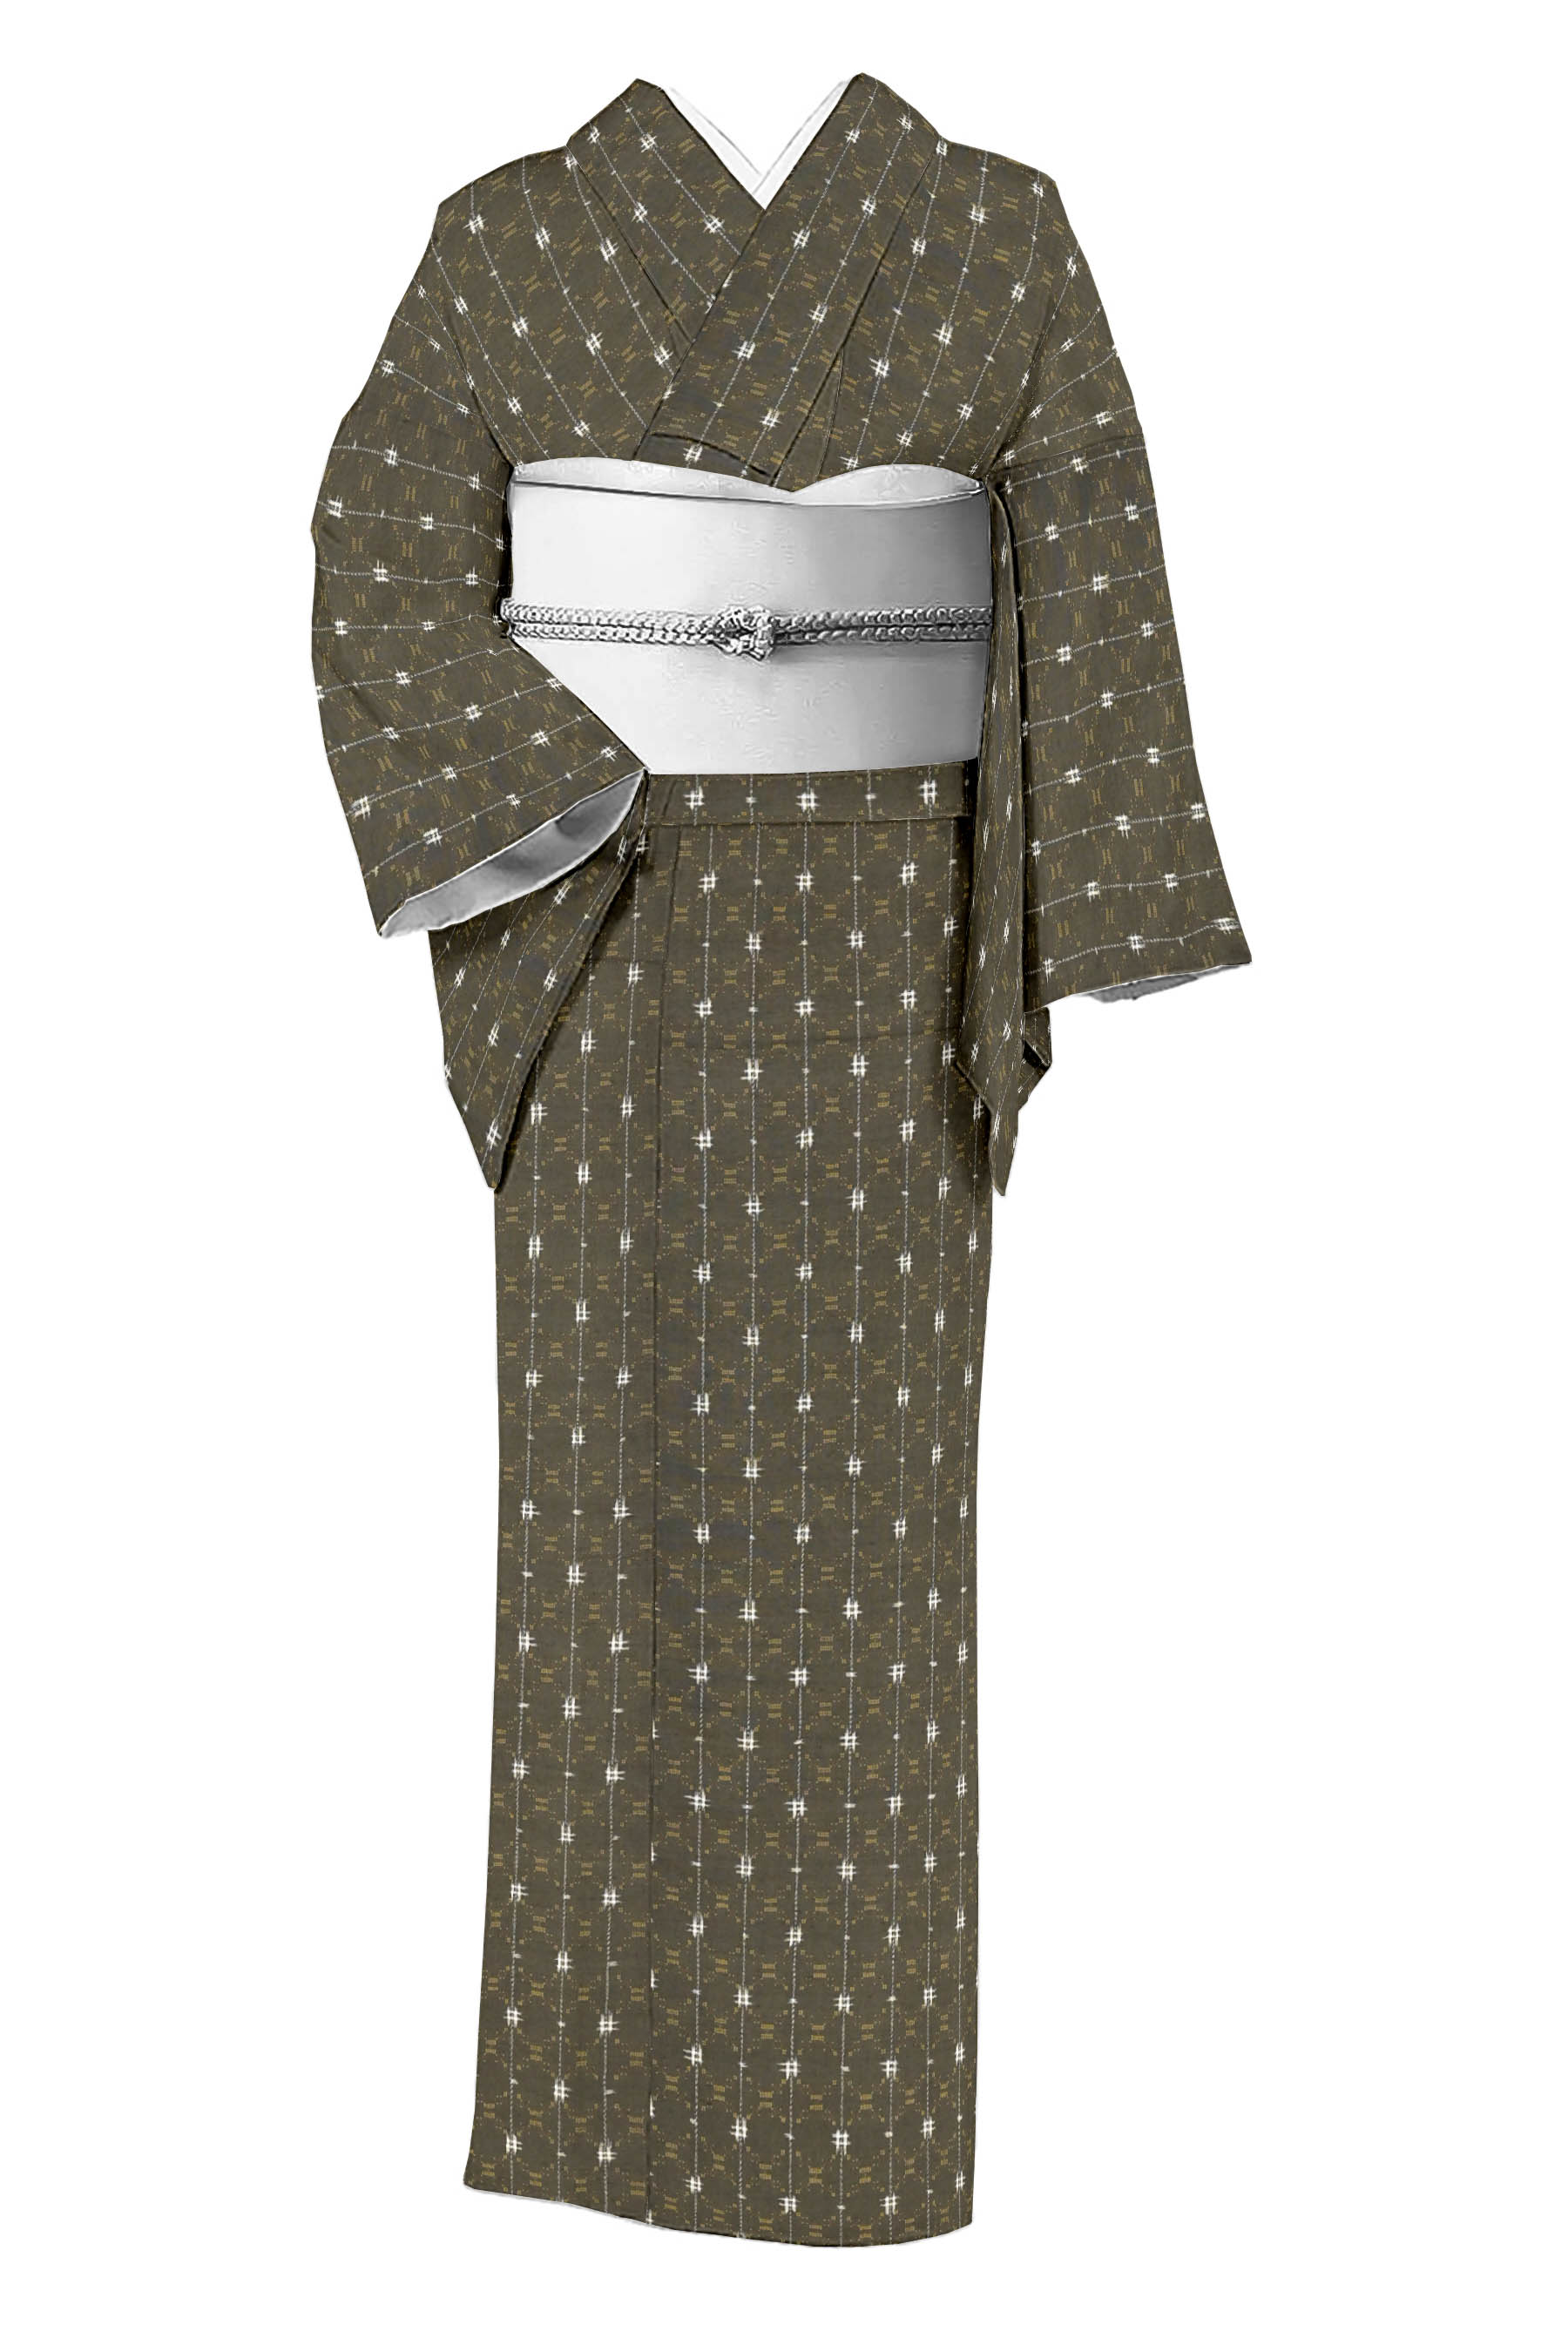 琉球花織 紬 証書付き - 着物・浴衣